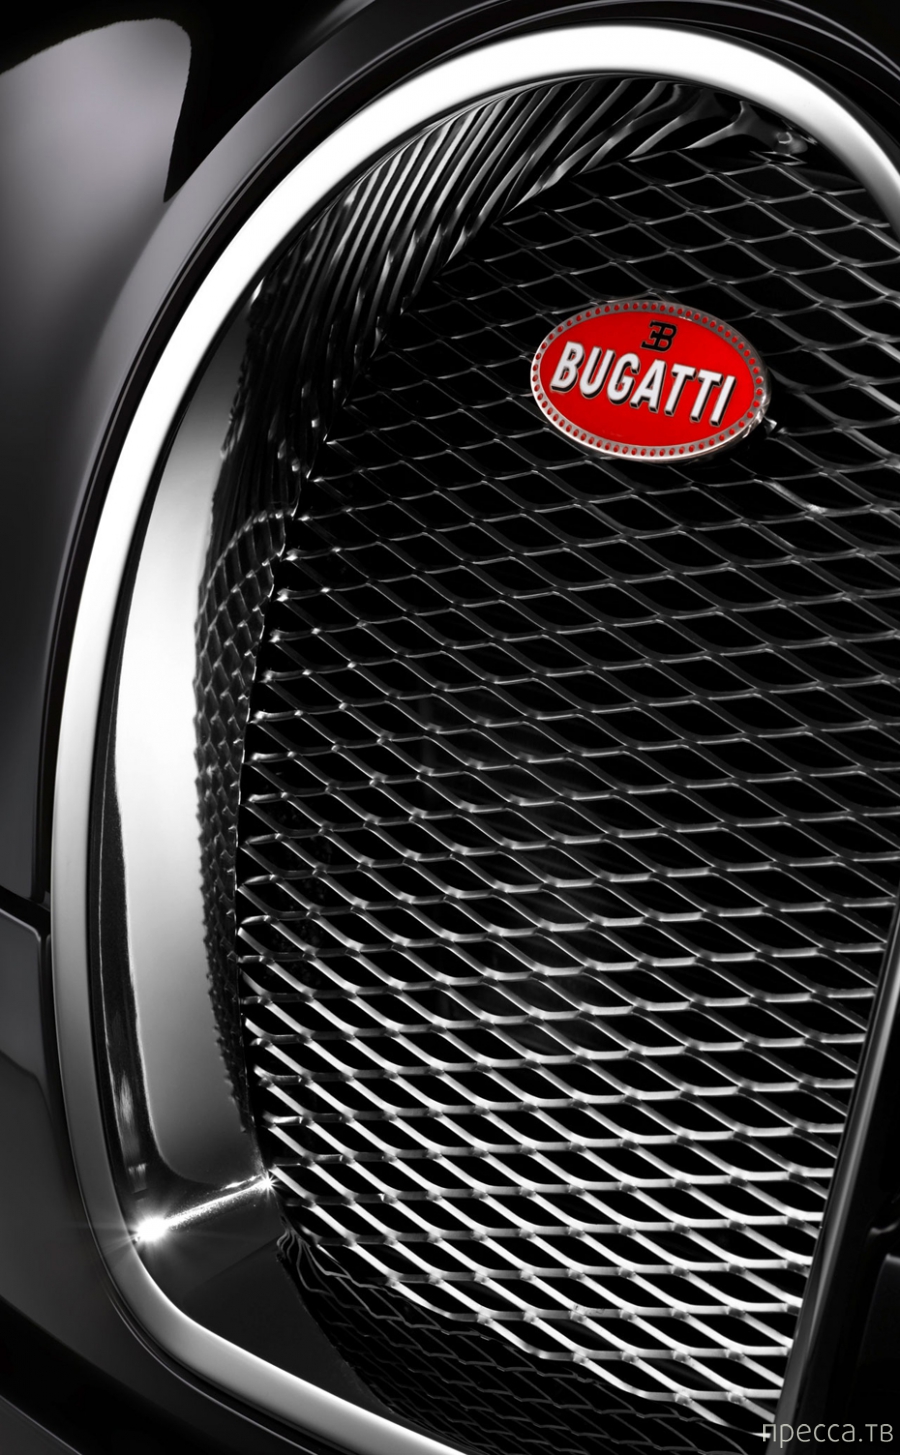    Bugatti (8 )